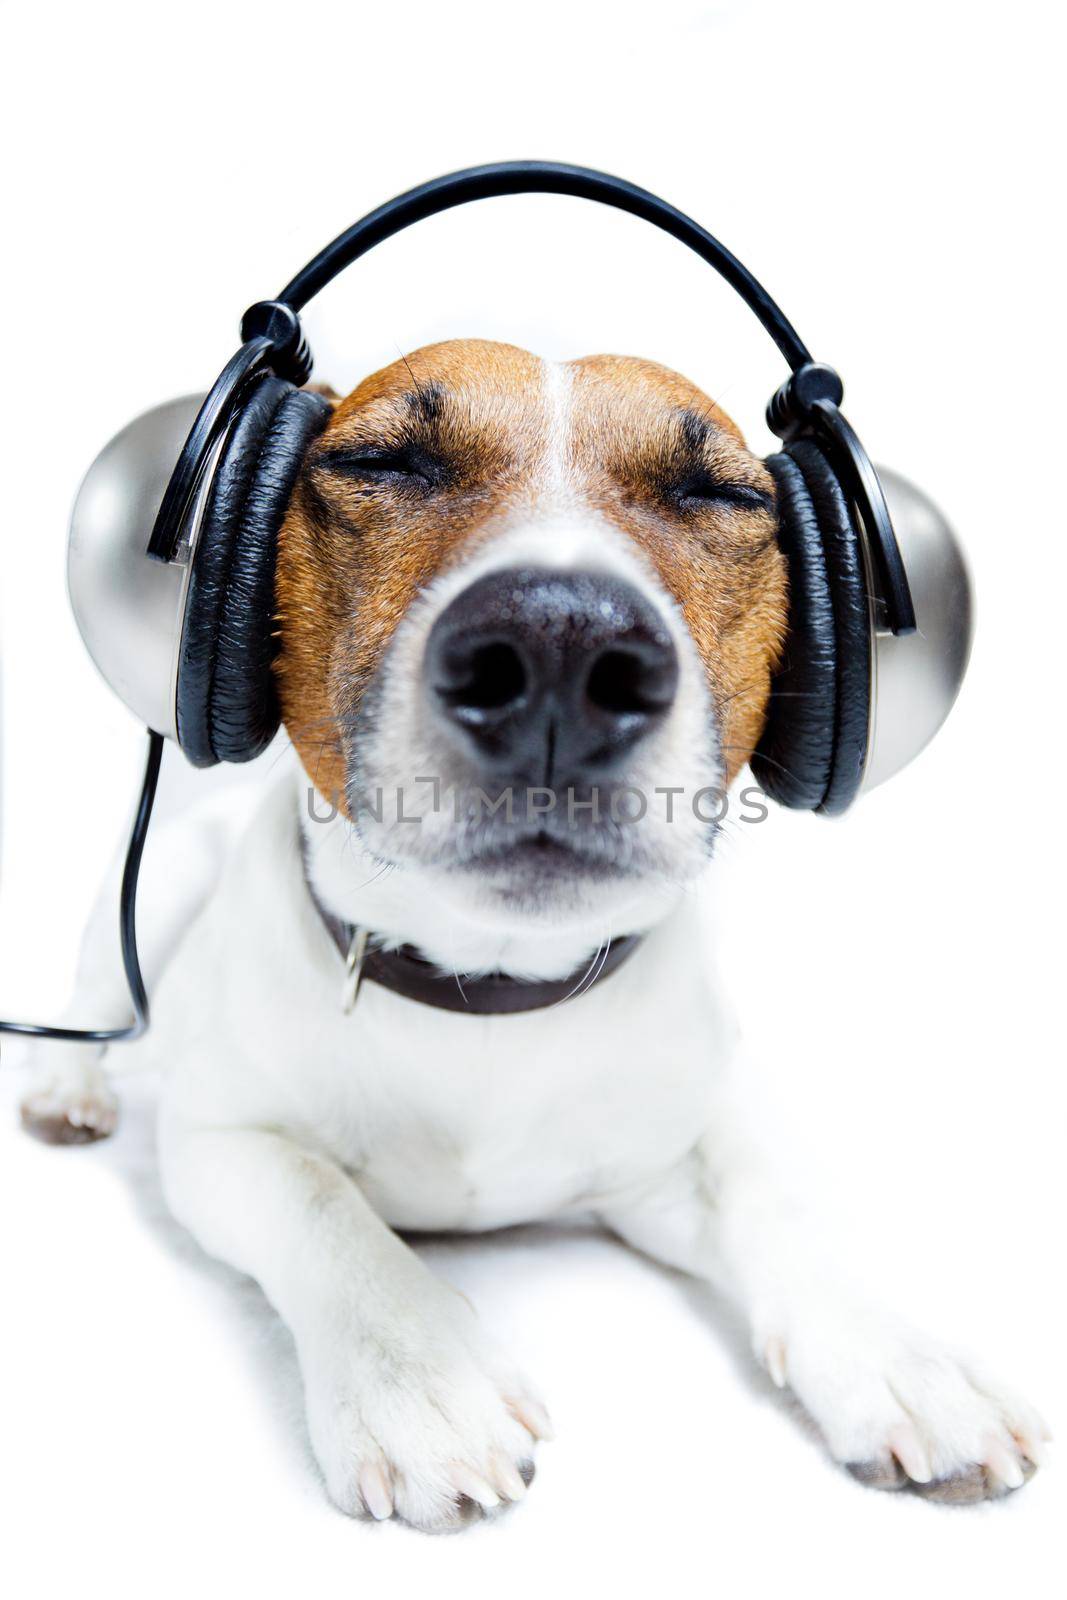 dog listening  to music by Brosch